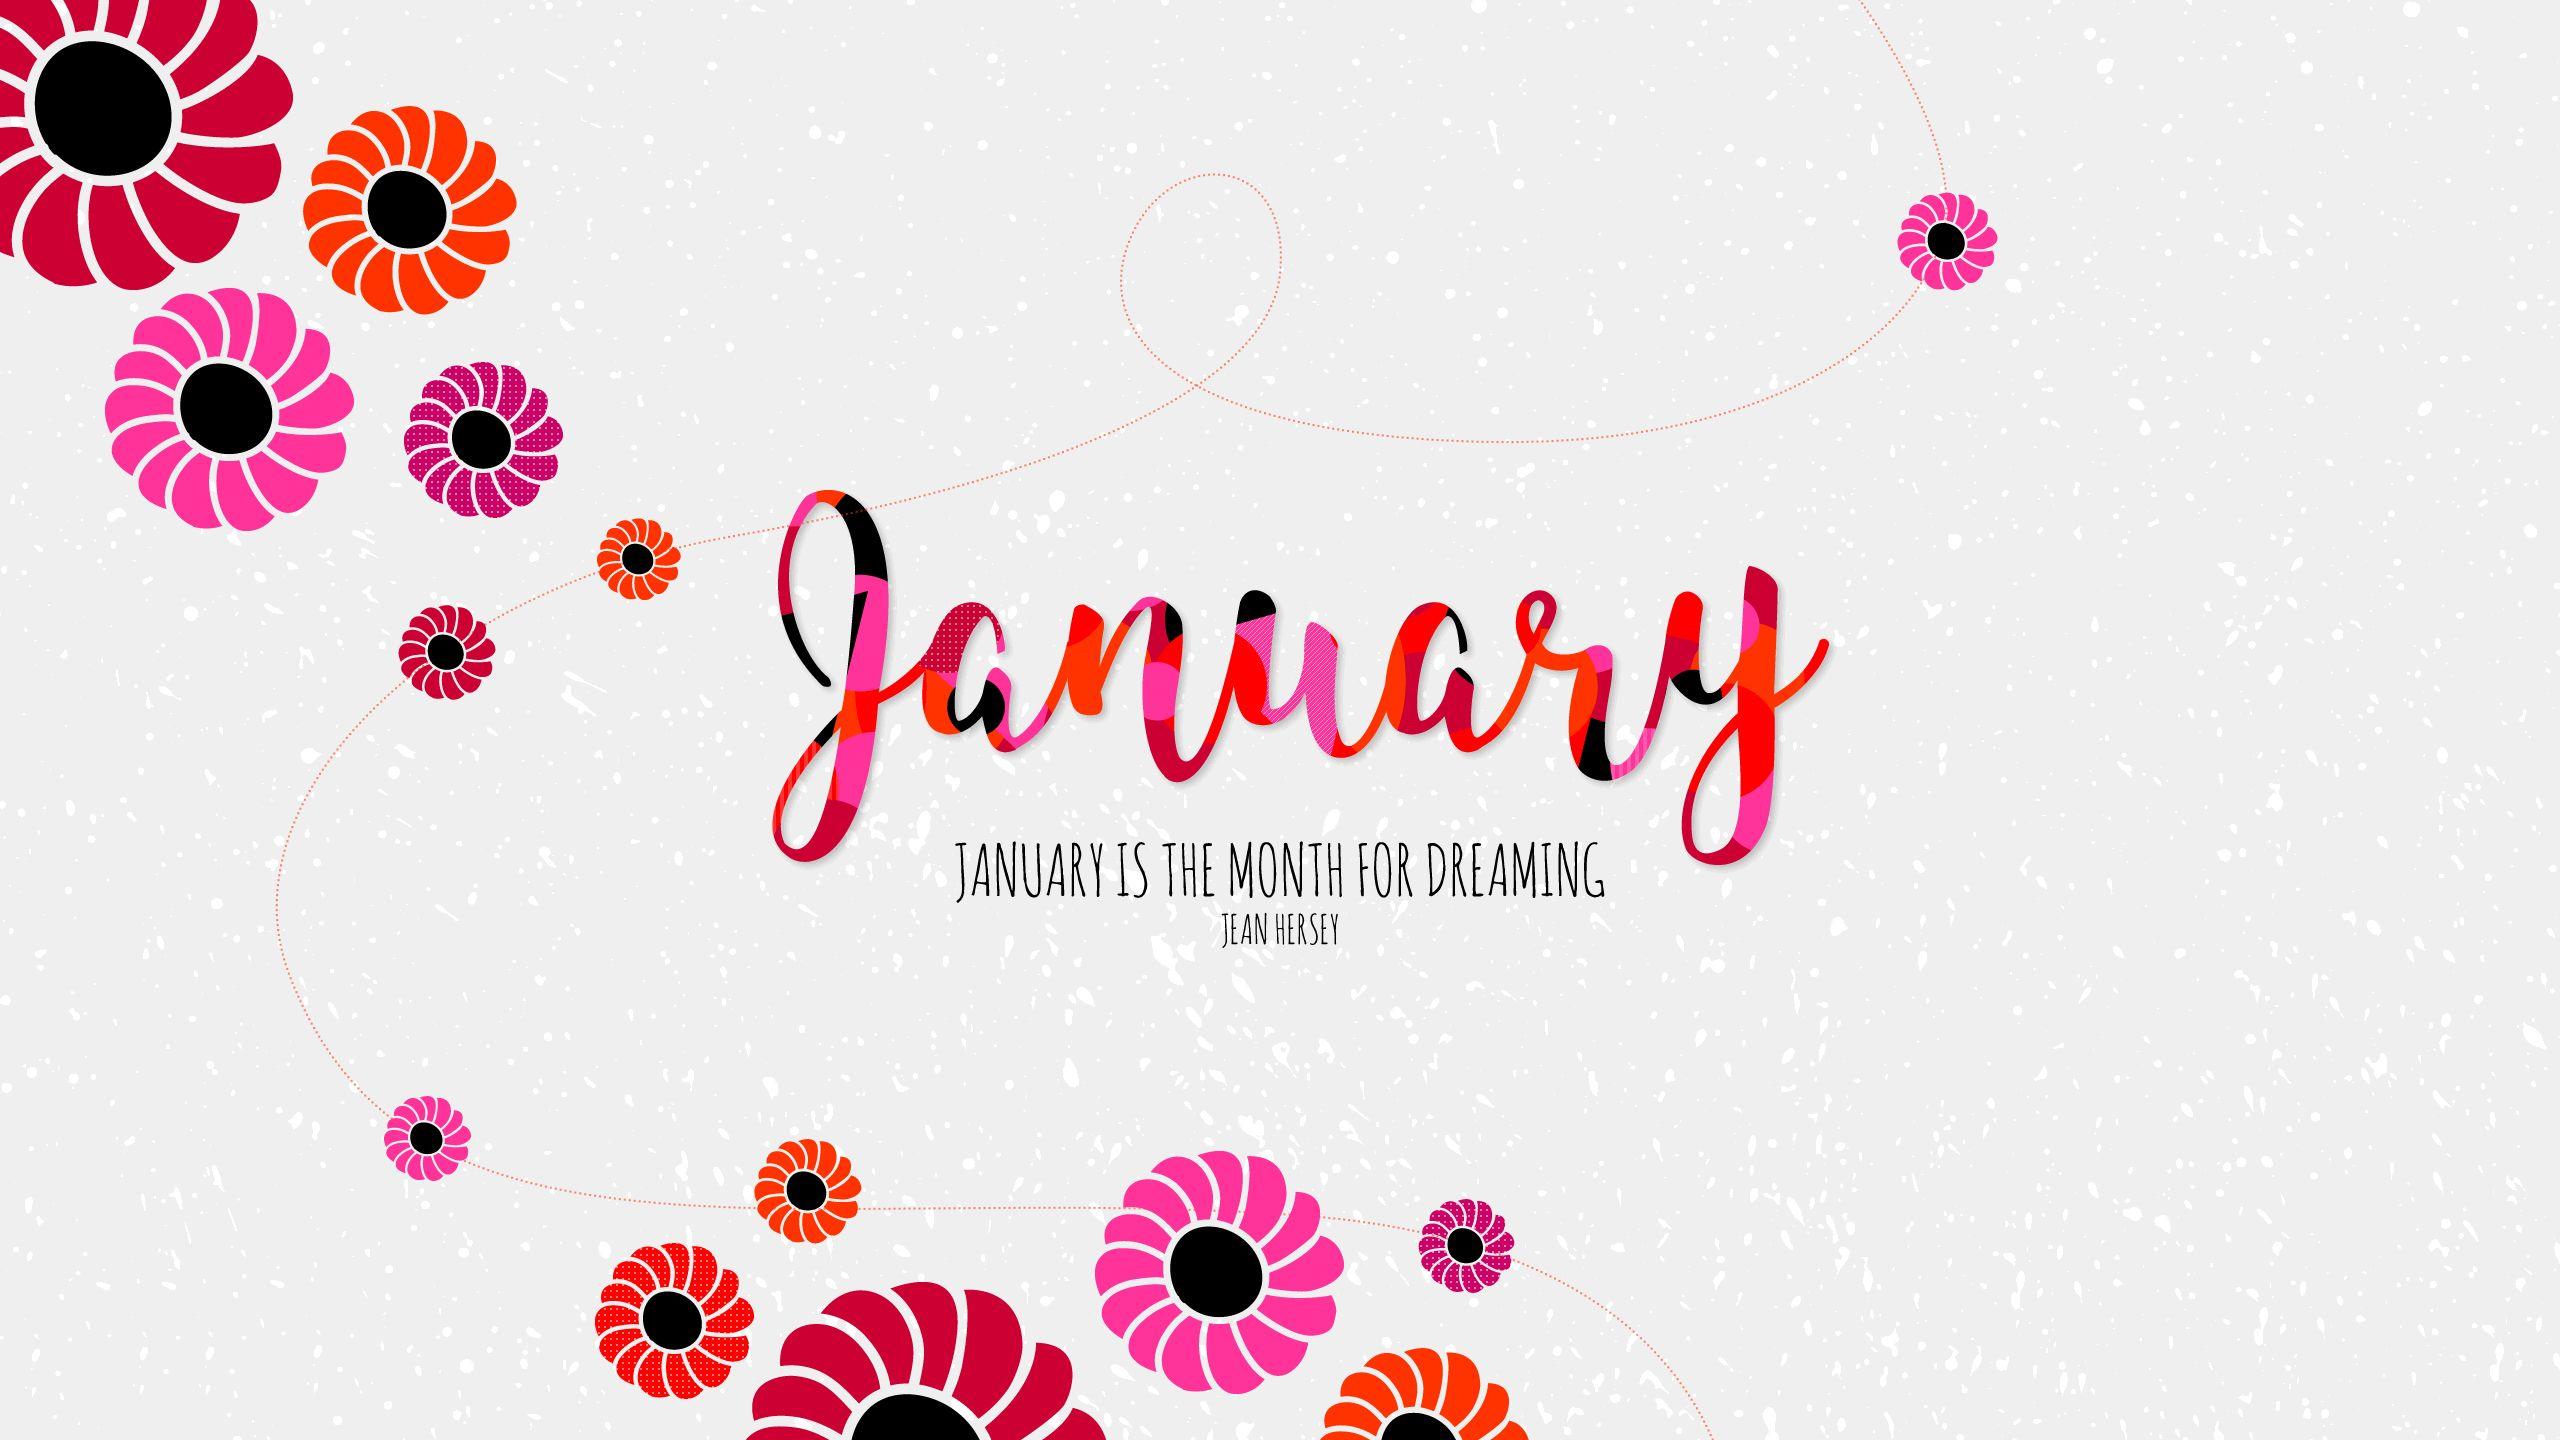 Dreaming #for #January #Month. wallpaper. Calendar wallpaper